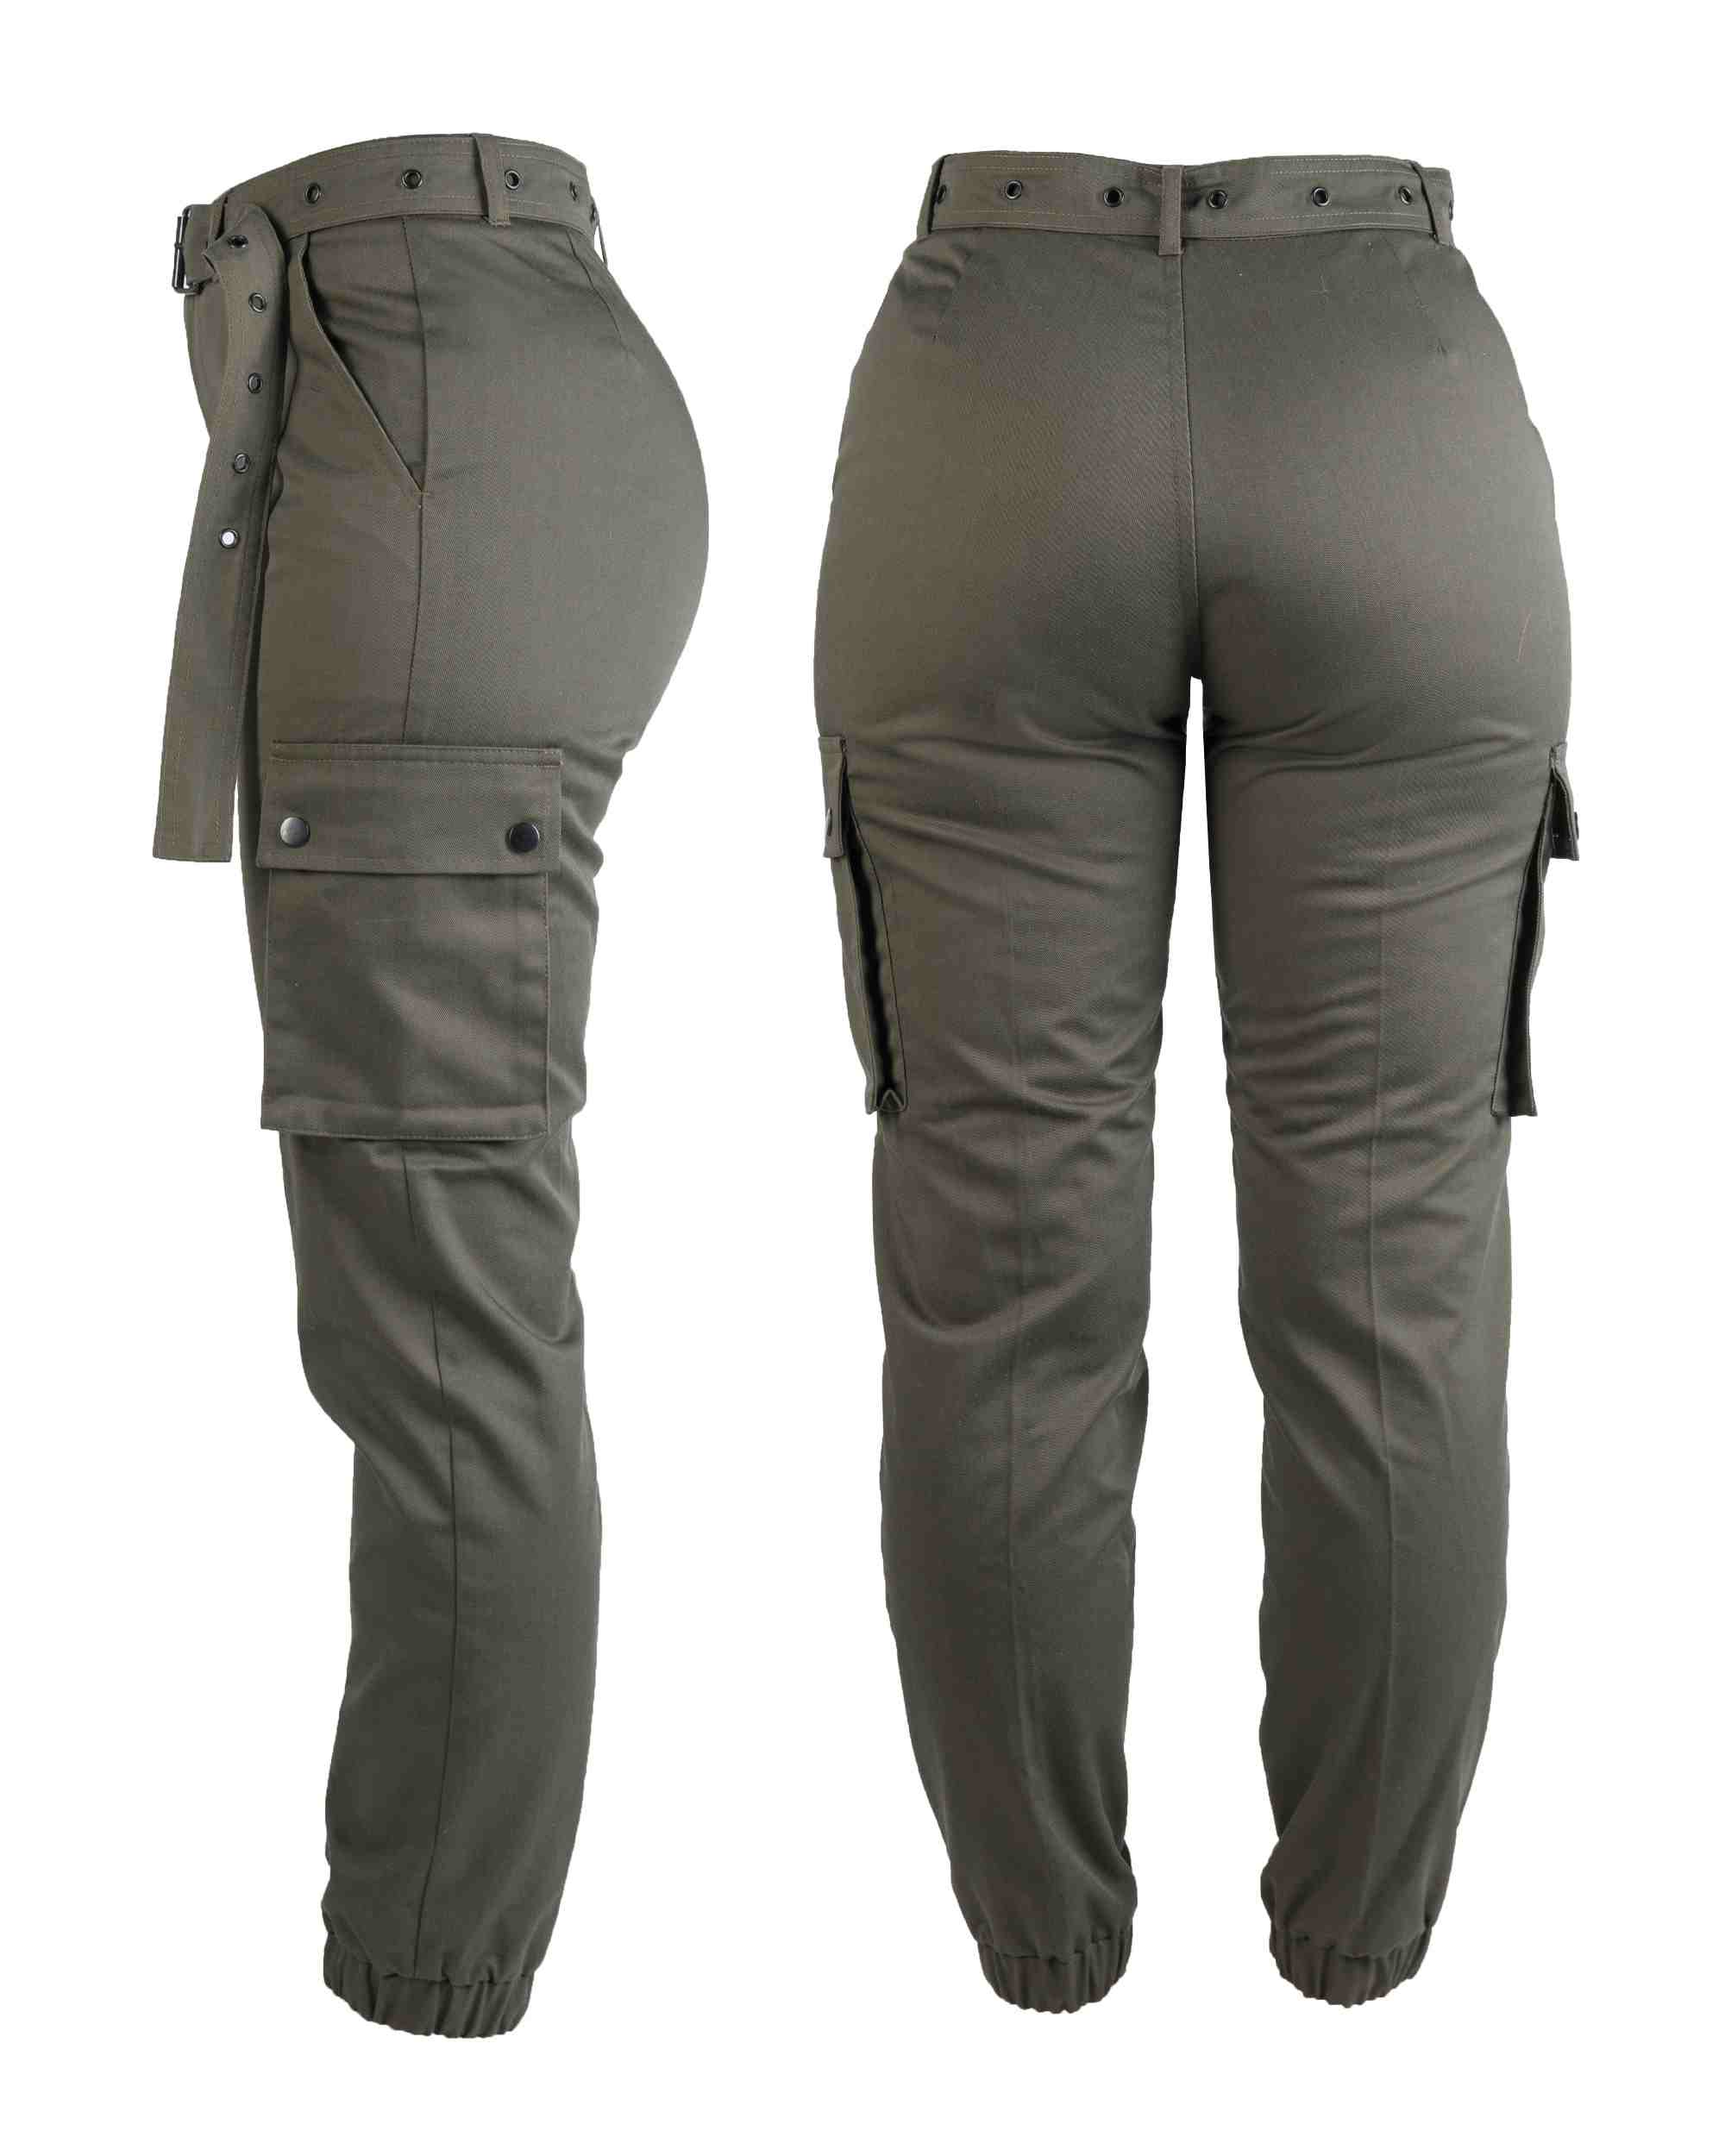 Army Pants Woman Oliv